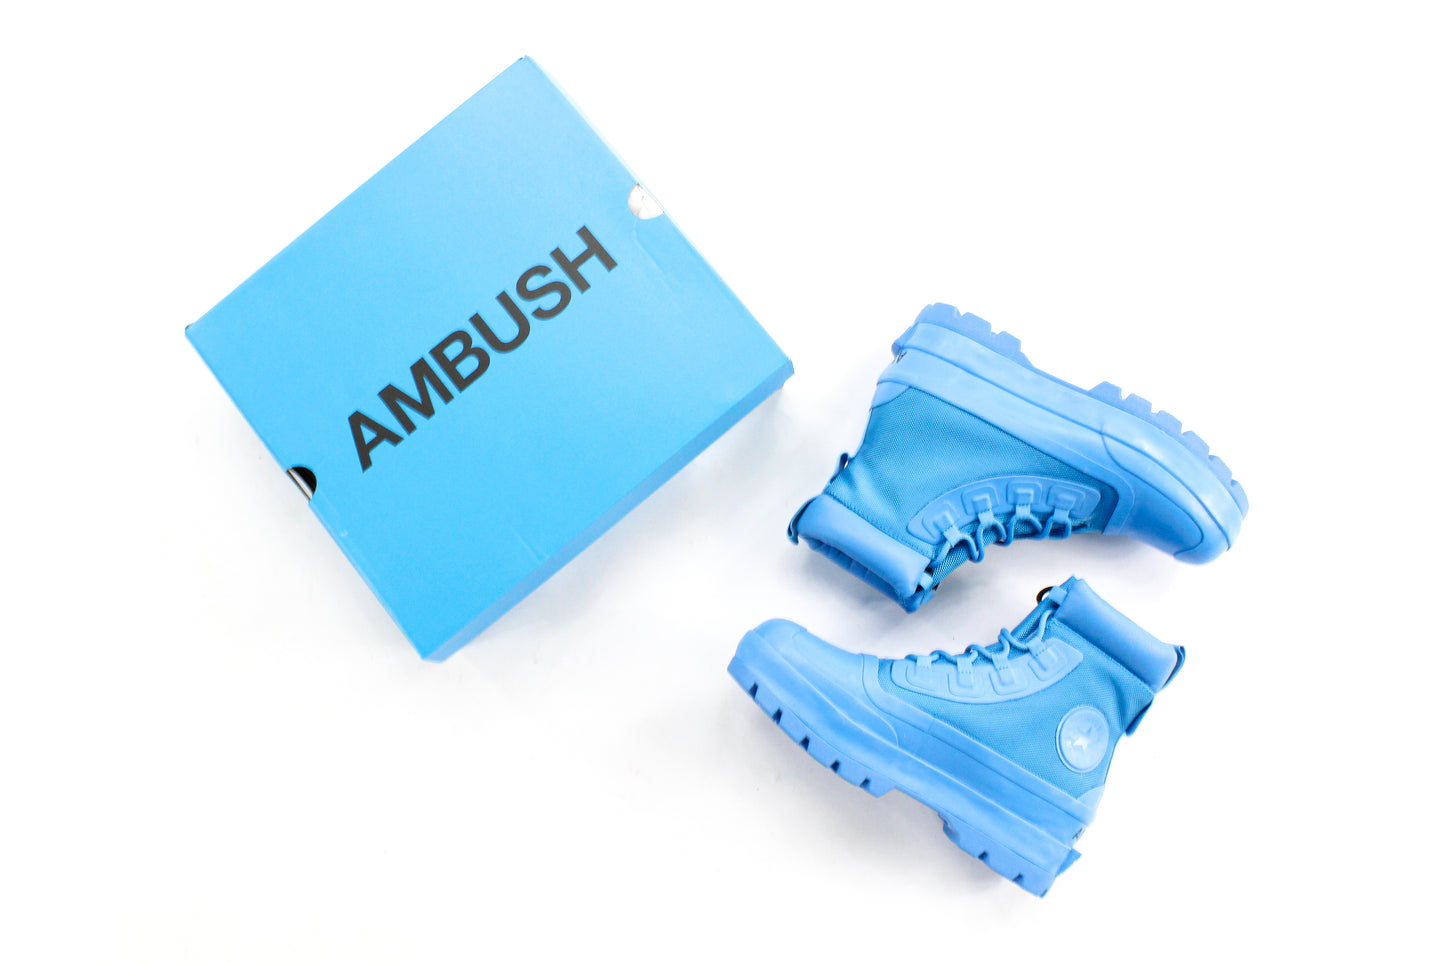 Converse Ambush 'Rubber Boot' - 1NE.derby